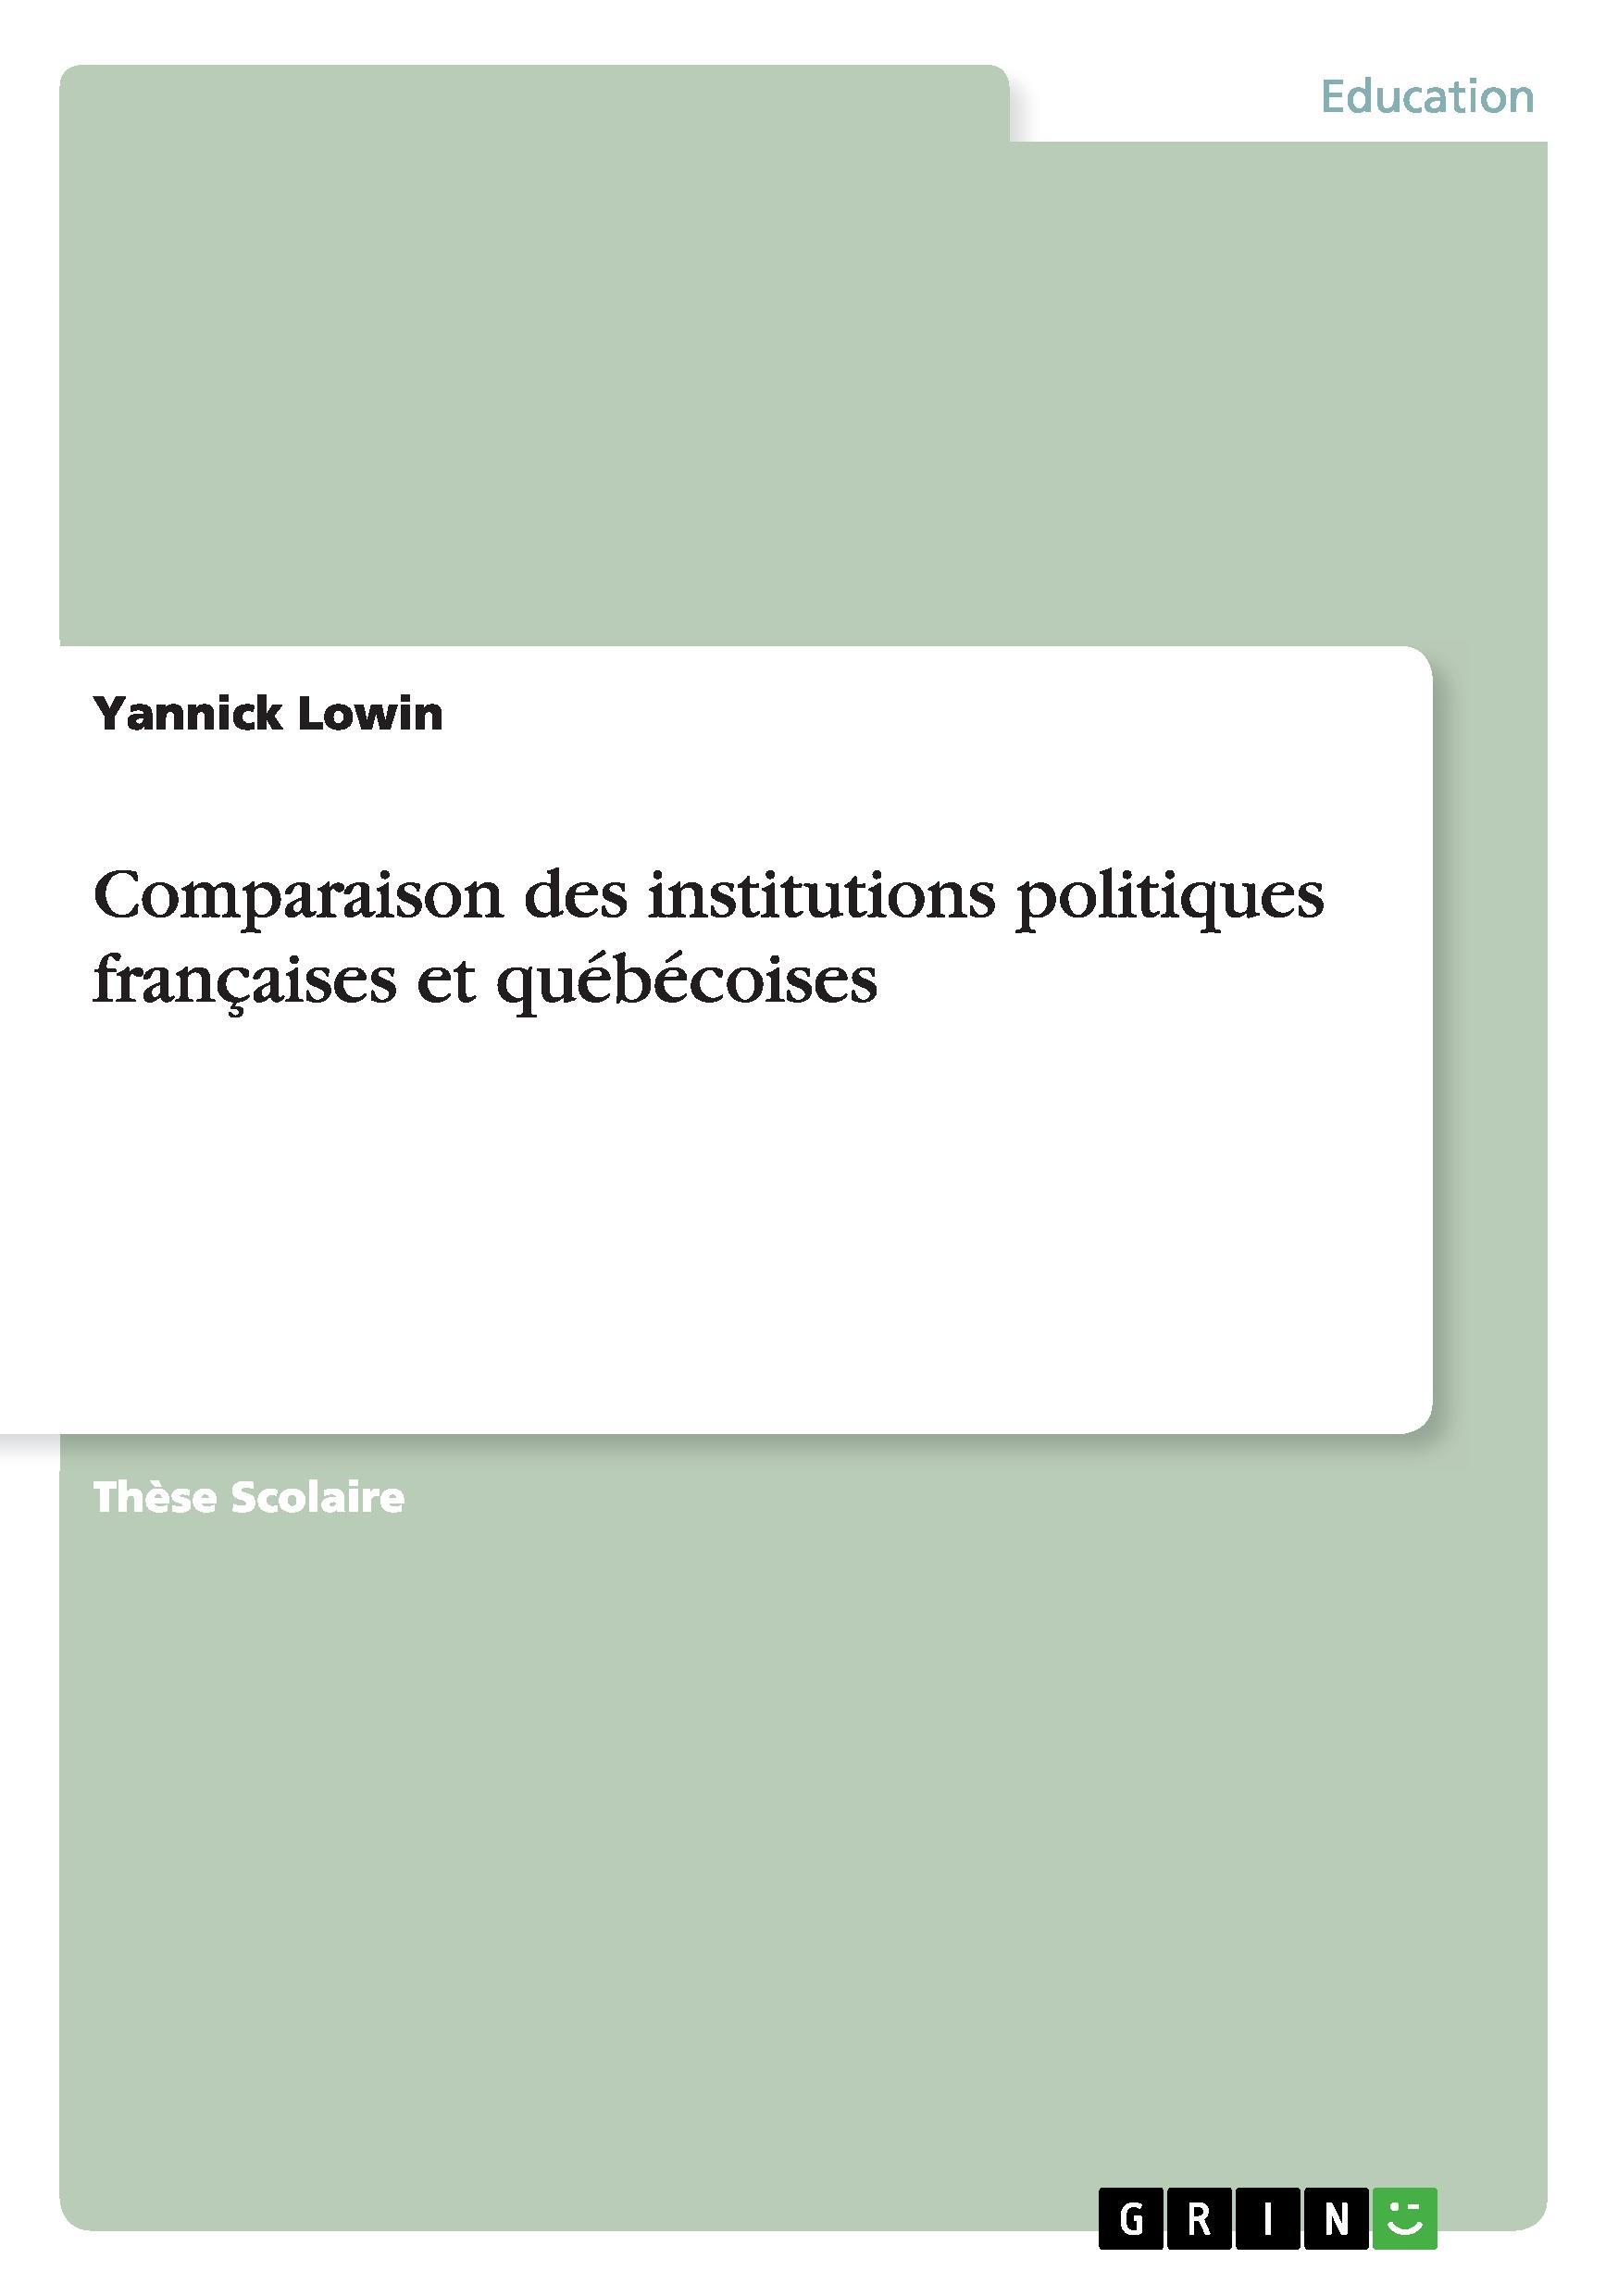 Comparaison des institutions politiques françaises et québécoises - Lowin, Yannick